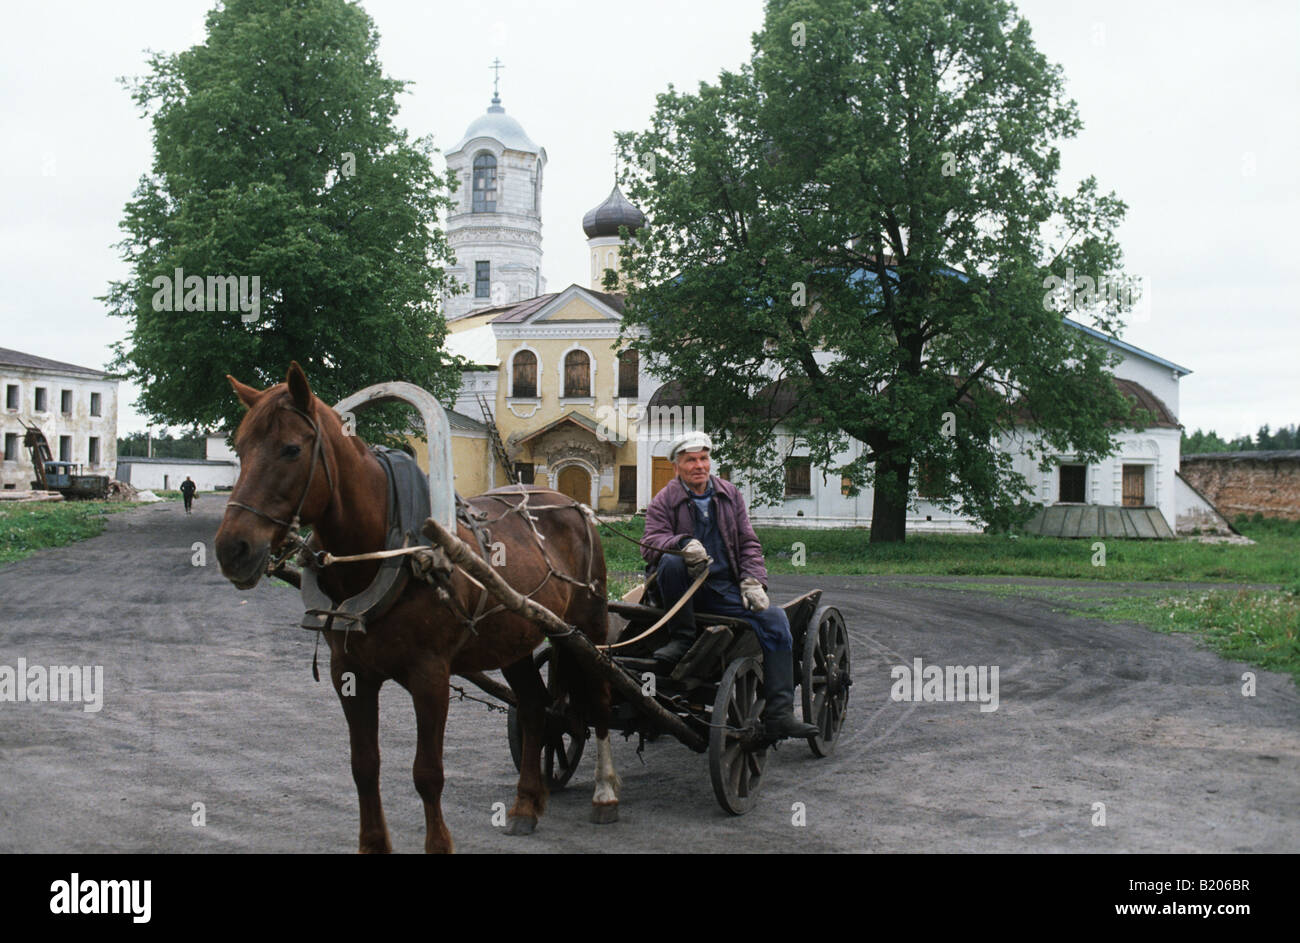 Il Alexander Svirsky monastero nr Lago Ladoga,Russia. Il suo cavallo e carrello con bidoni per il latte.It è diventata un gulag,Svirlag dopo 1917 Foto Stock